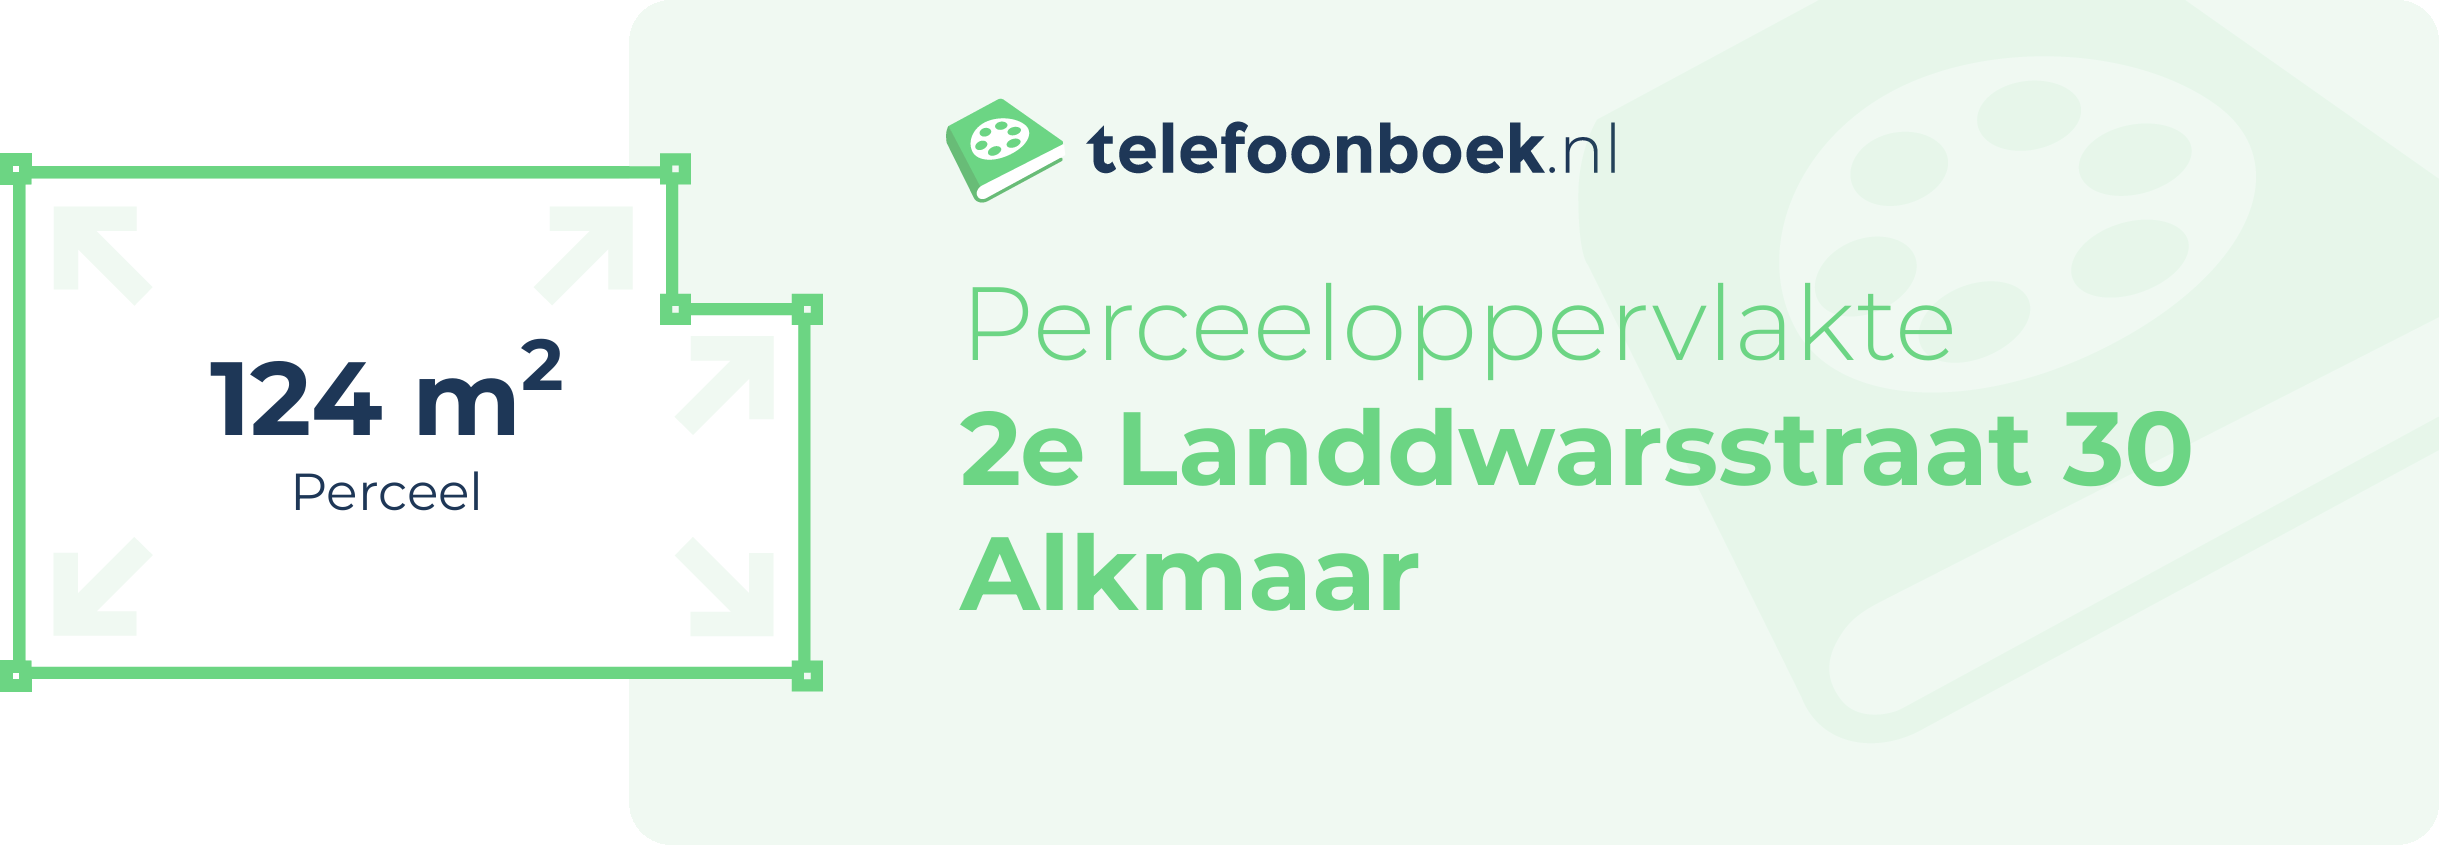 Perceeloppervlakte 2e Landdwarsstraat 30 Alkmaar